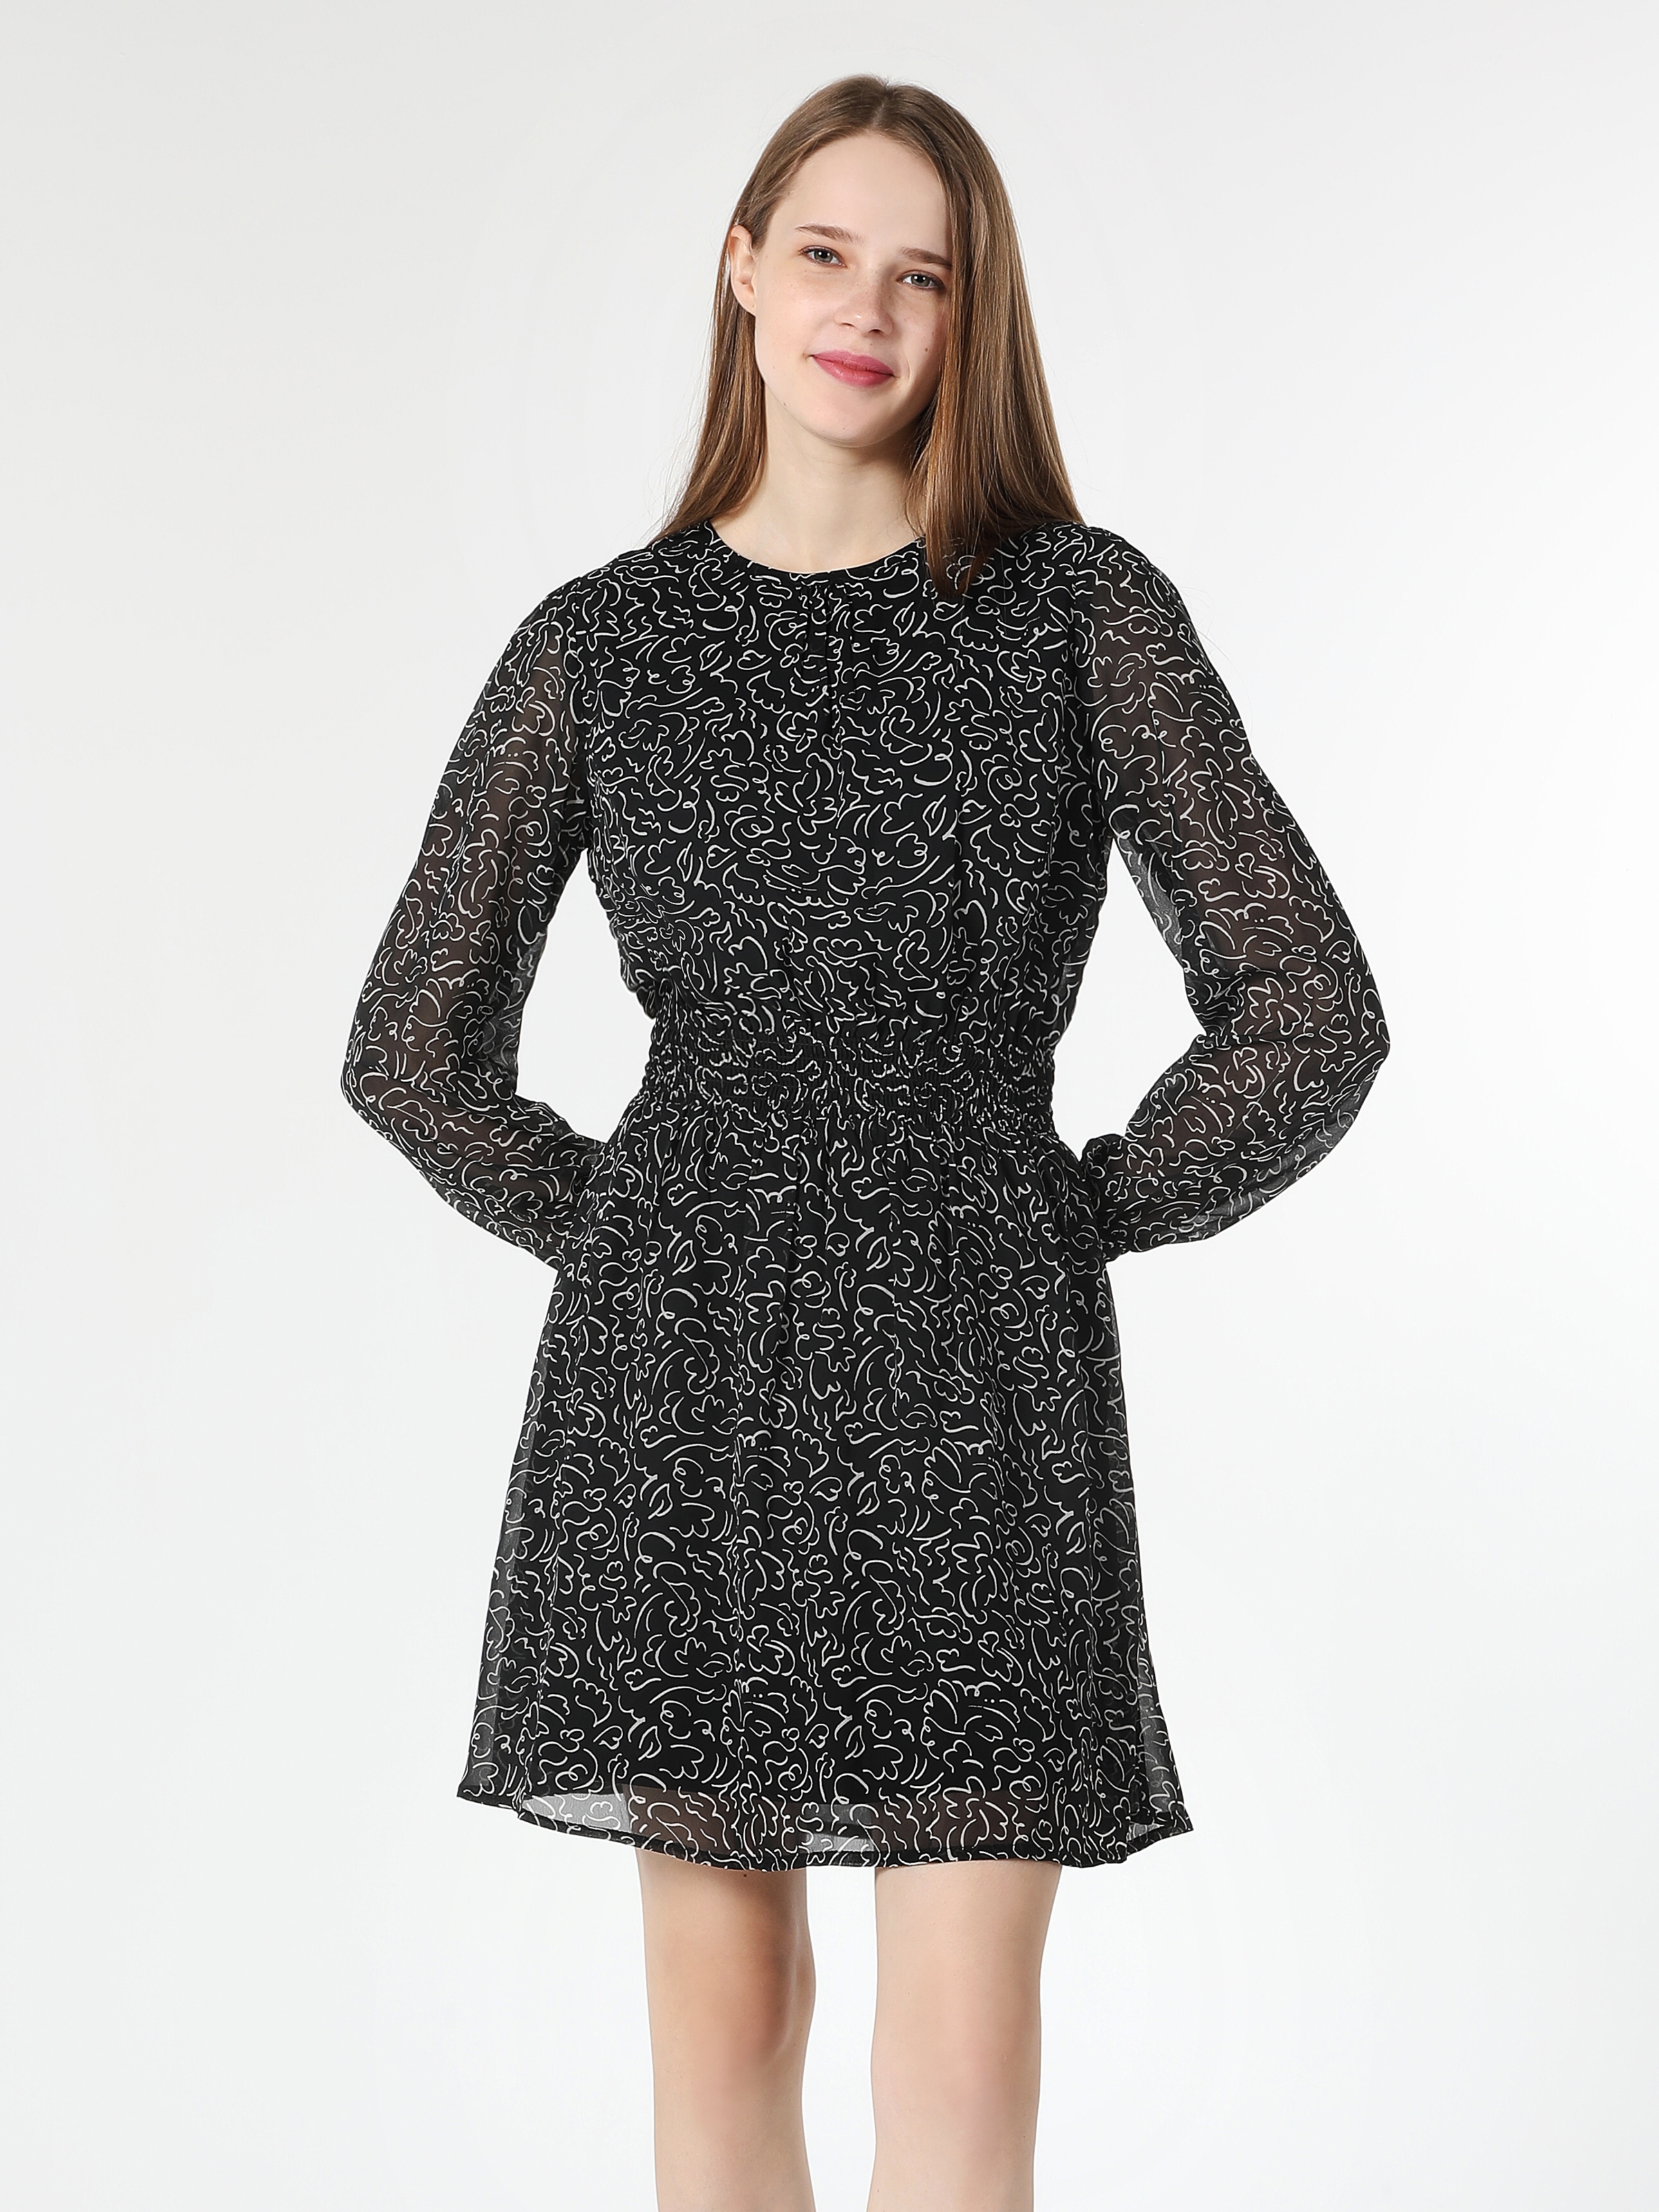 Показати інформацію про Сукня Жіноча Чорна З Малюнком Класичного Крою Cl1062108